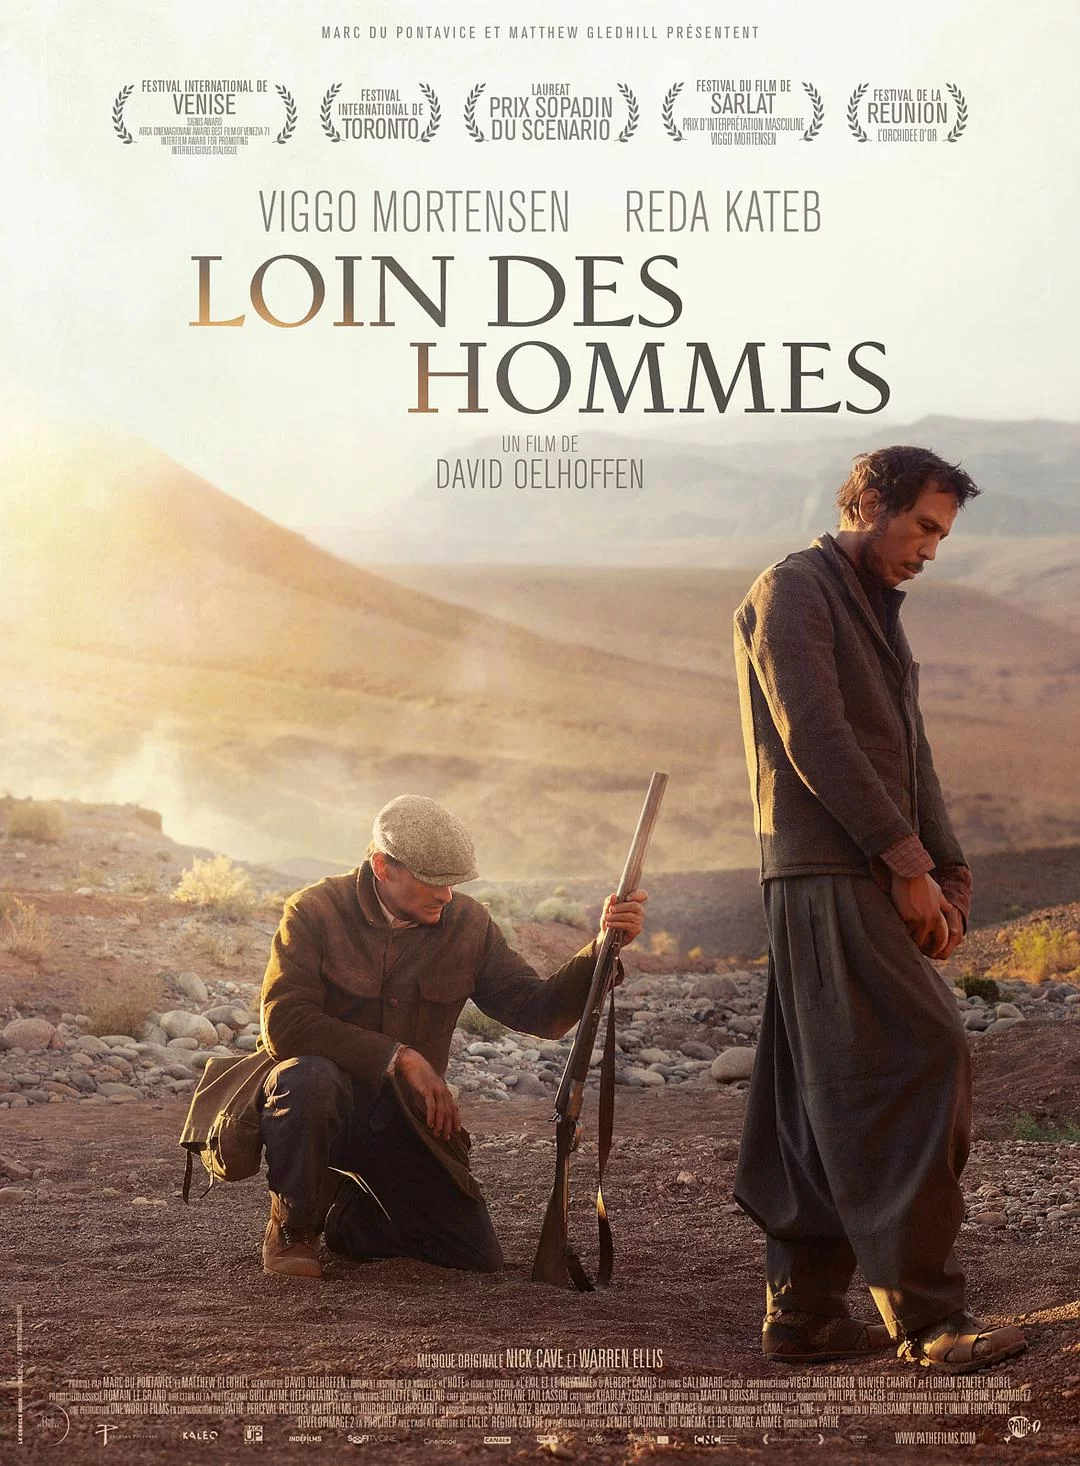 远离人迹 蓝光原盘下载+高清MKV版/Far from Men 2014 Loin des hommes 31.0G